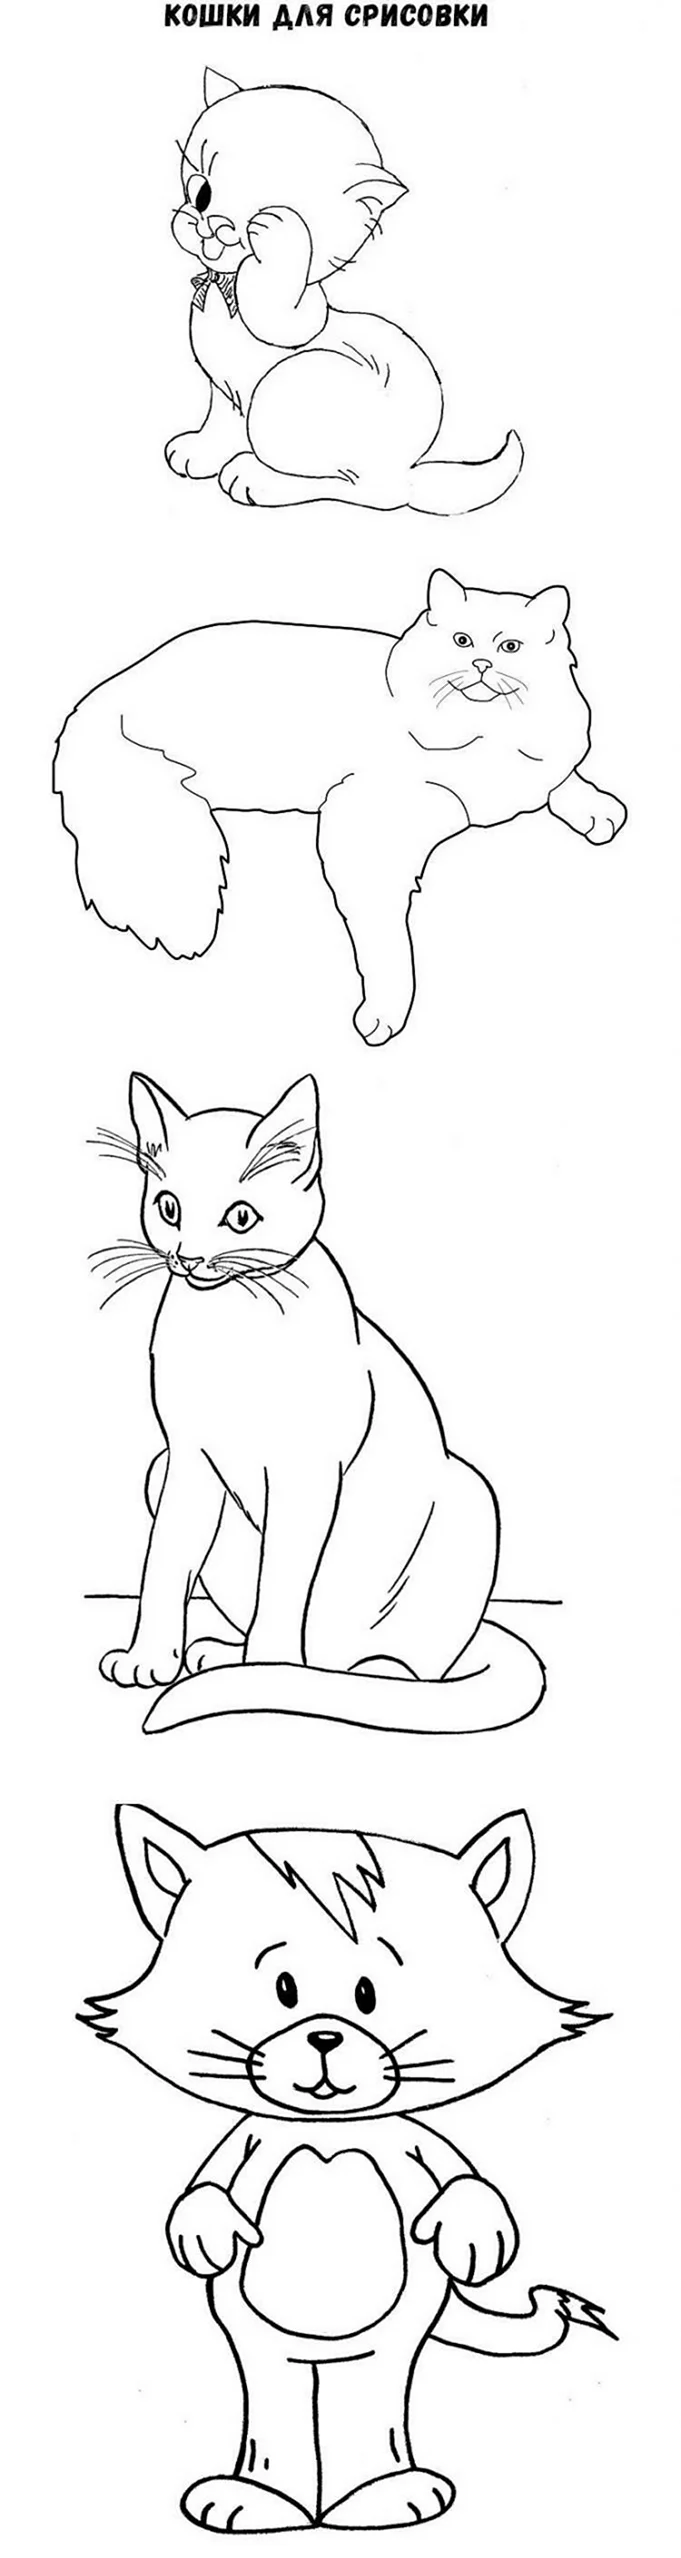 Рисунок кошки для срисовки легкие. Для срисовки